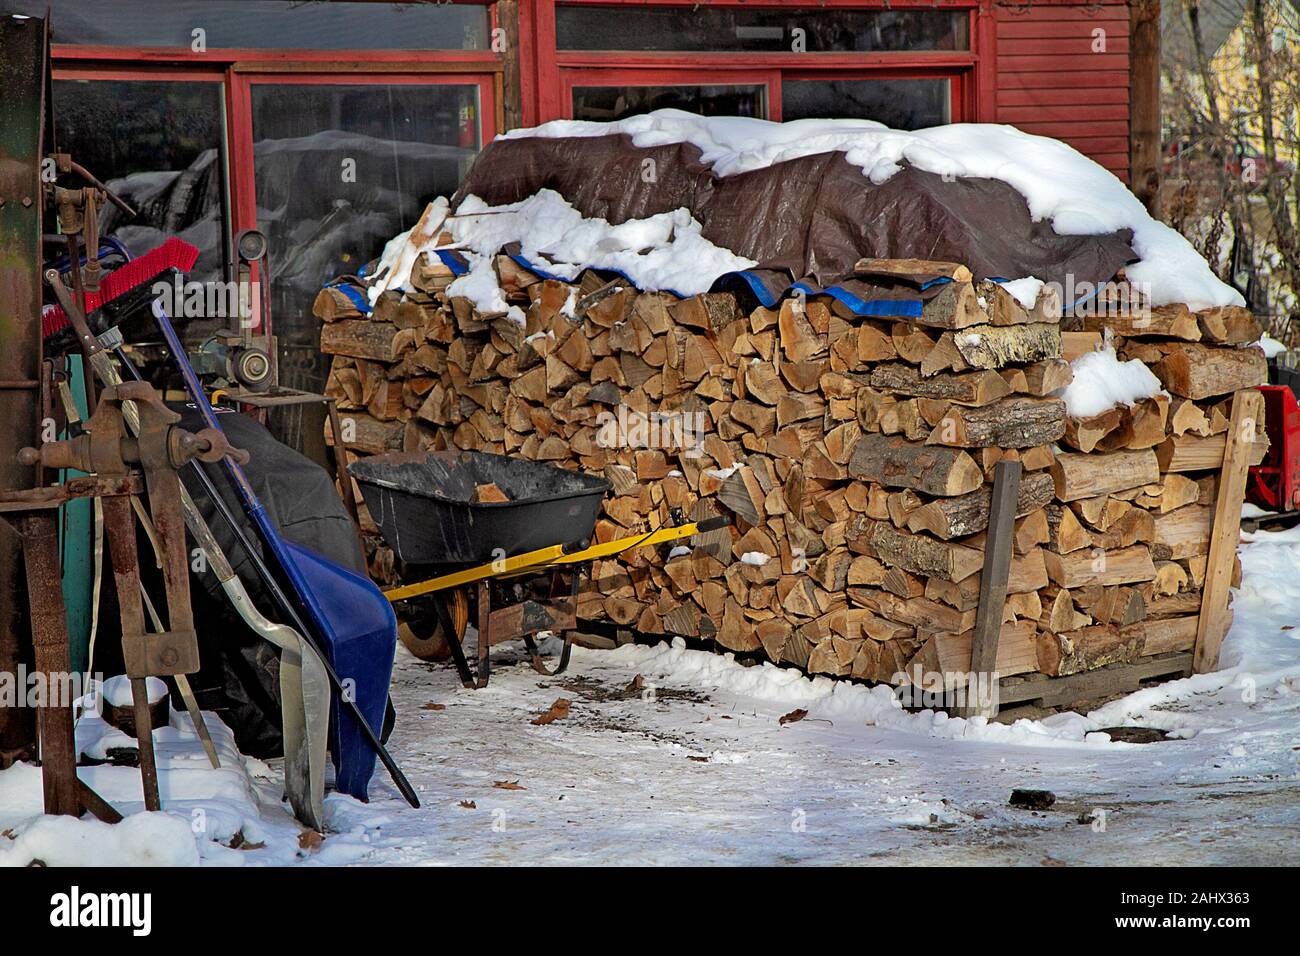 Feu de bois empilé à l'extérieur et derrière un bâtiment au milieu de l'hiver avec de la neige sur le sol et couvrant le bois. Banque D'Images